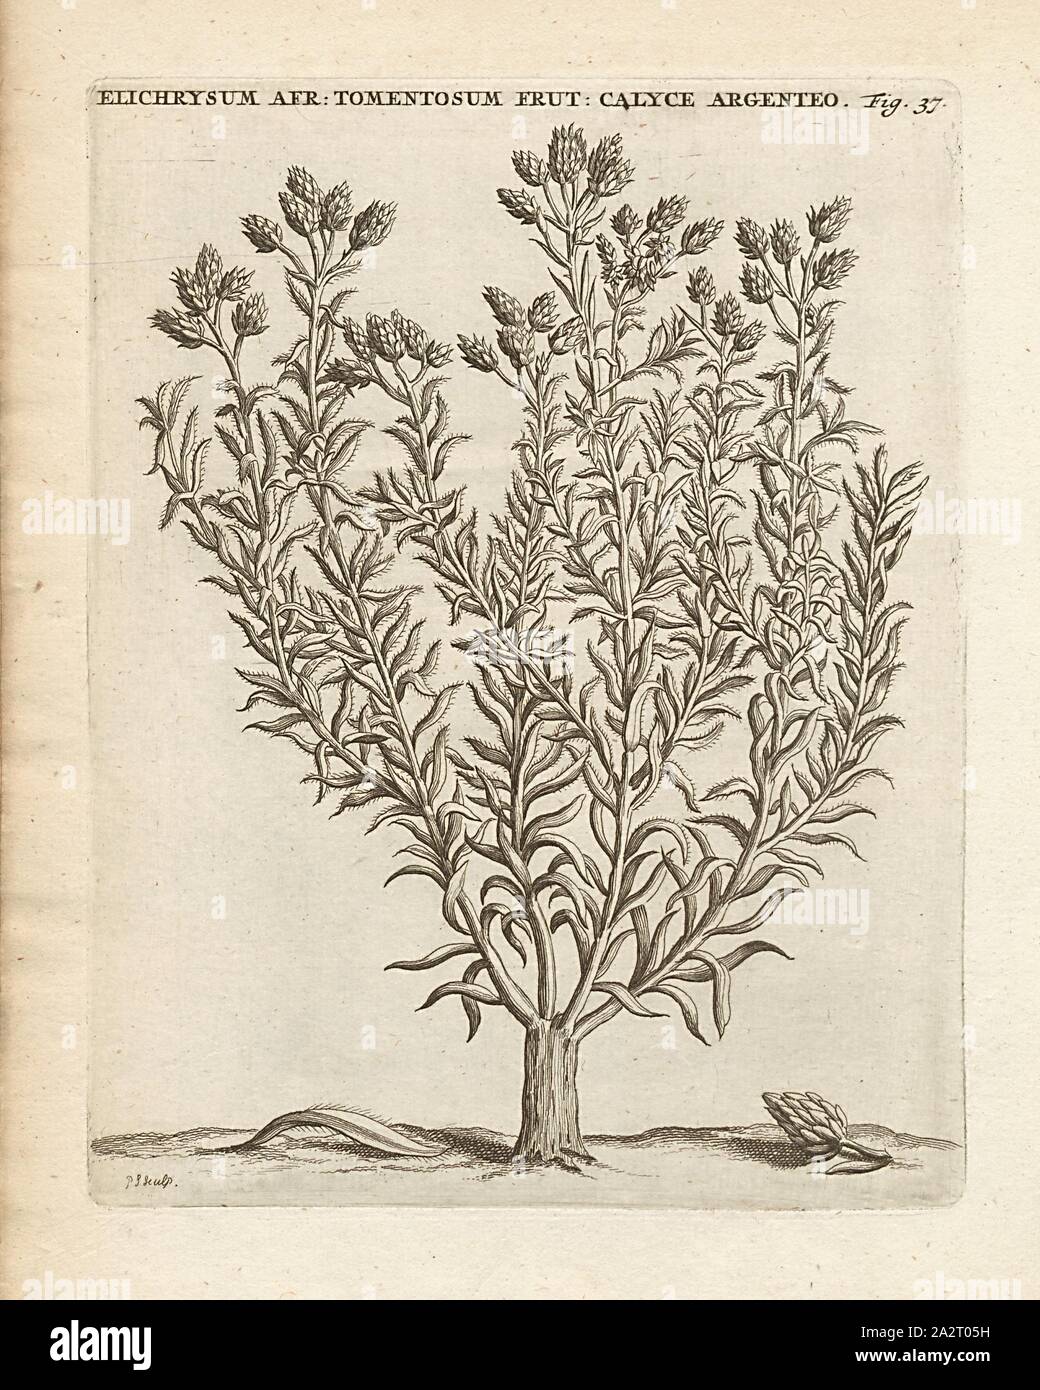 Elichrysum African tomentosum frutesccns silver calvce, Helichrysum cf. paniculatum L, signed: P.S. (sculp.), Fig. 37, after p. 36, p. 118, Sluyter, P. (sc.), 1706, Caspari Commelin ... Horti Medici ... plantae rariores et exoticae. Lugduni Batavorum: apud Federicum Haringh, 1706 Stock Photo